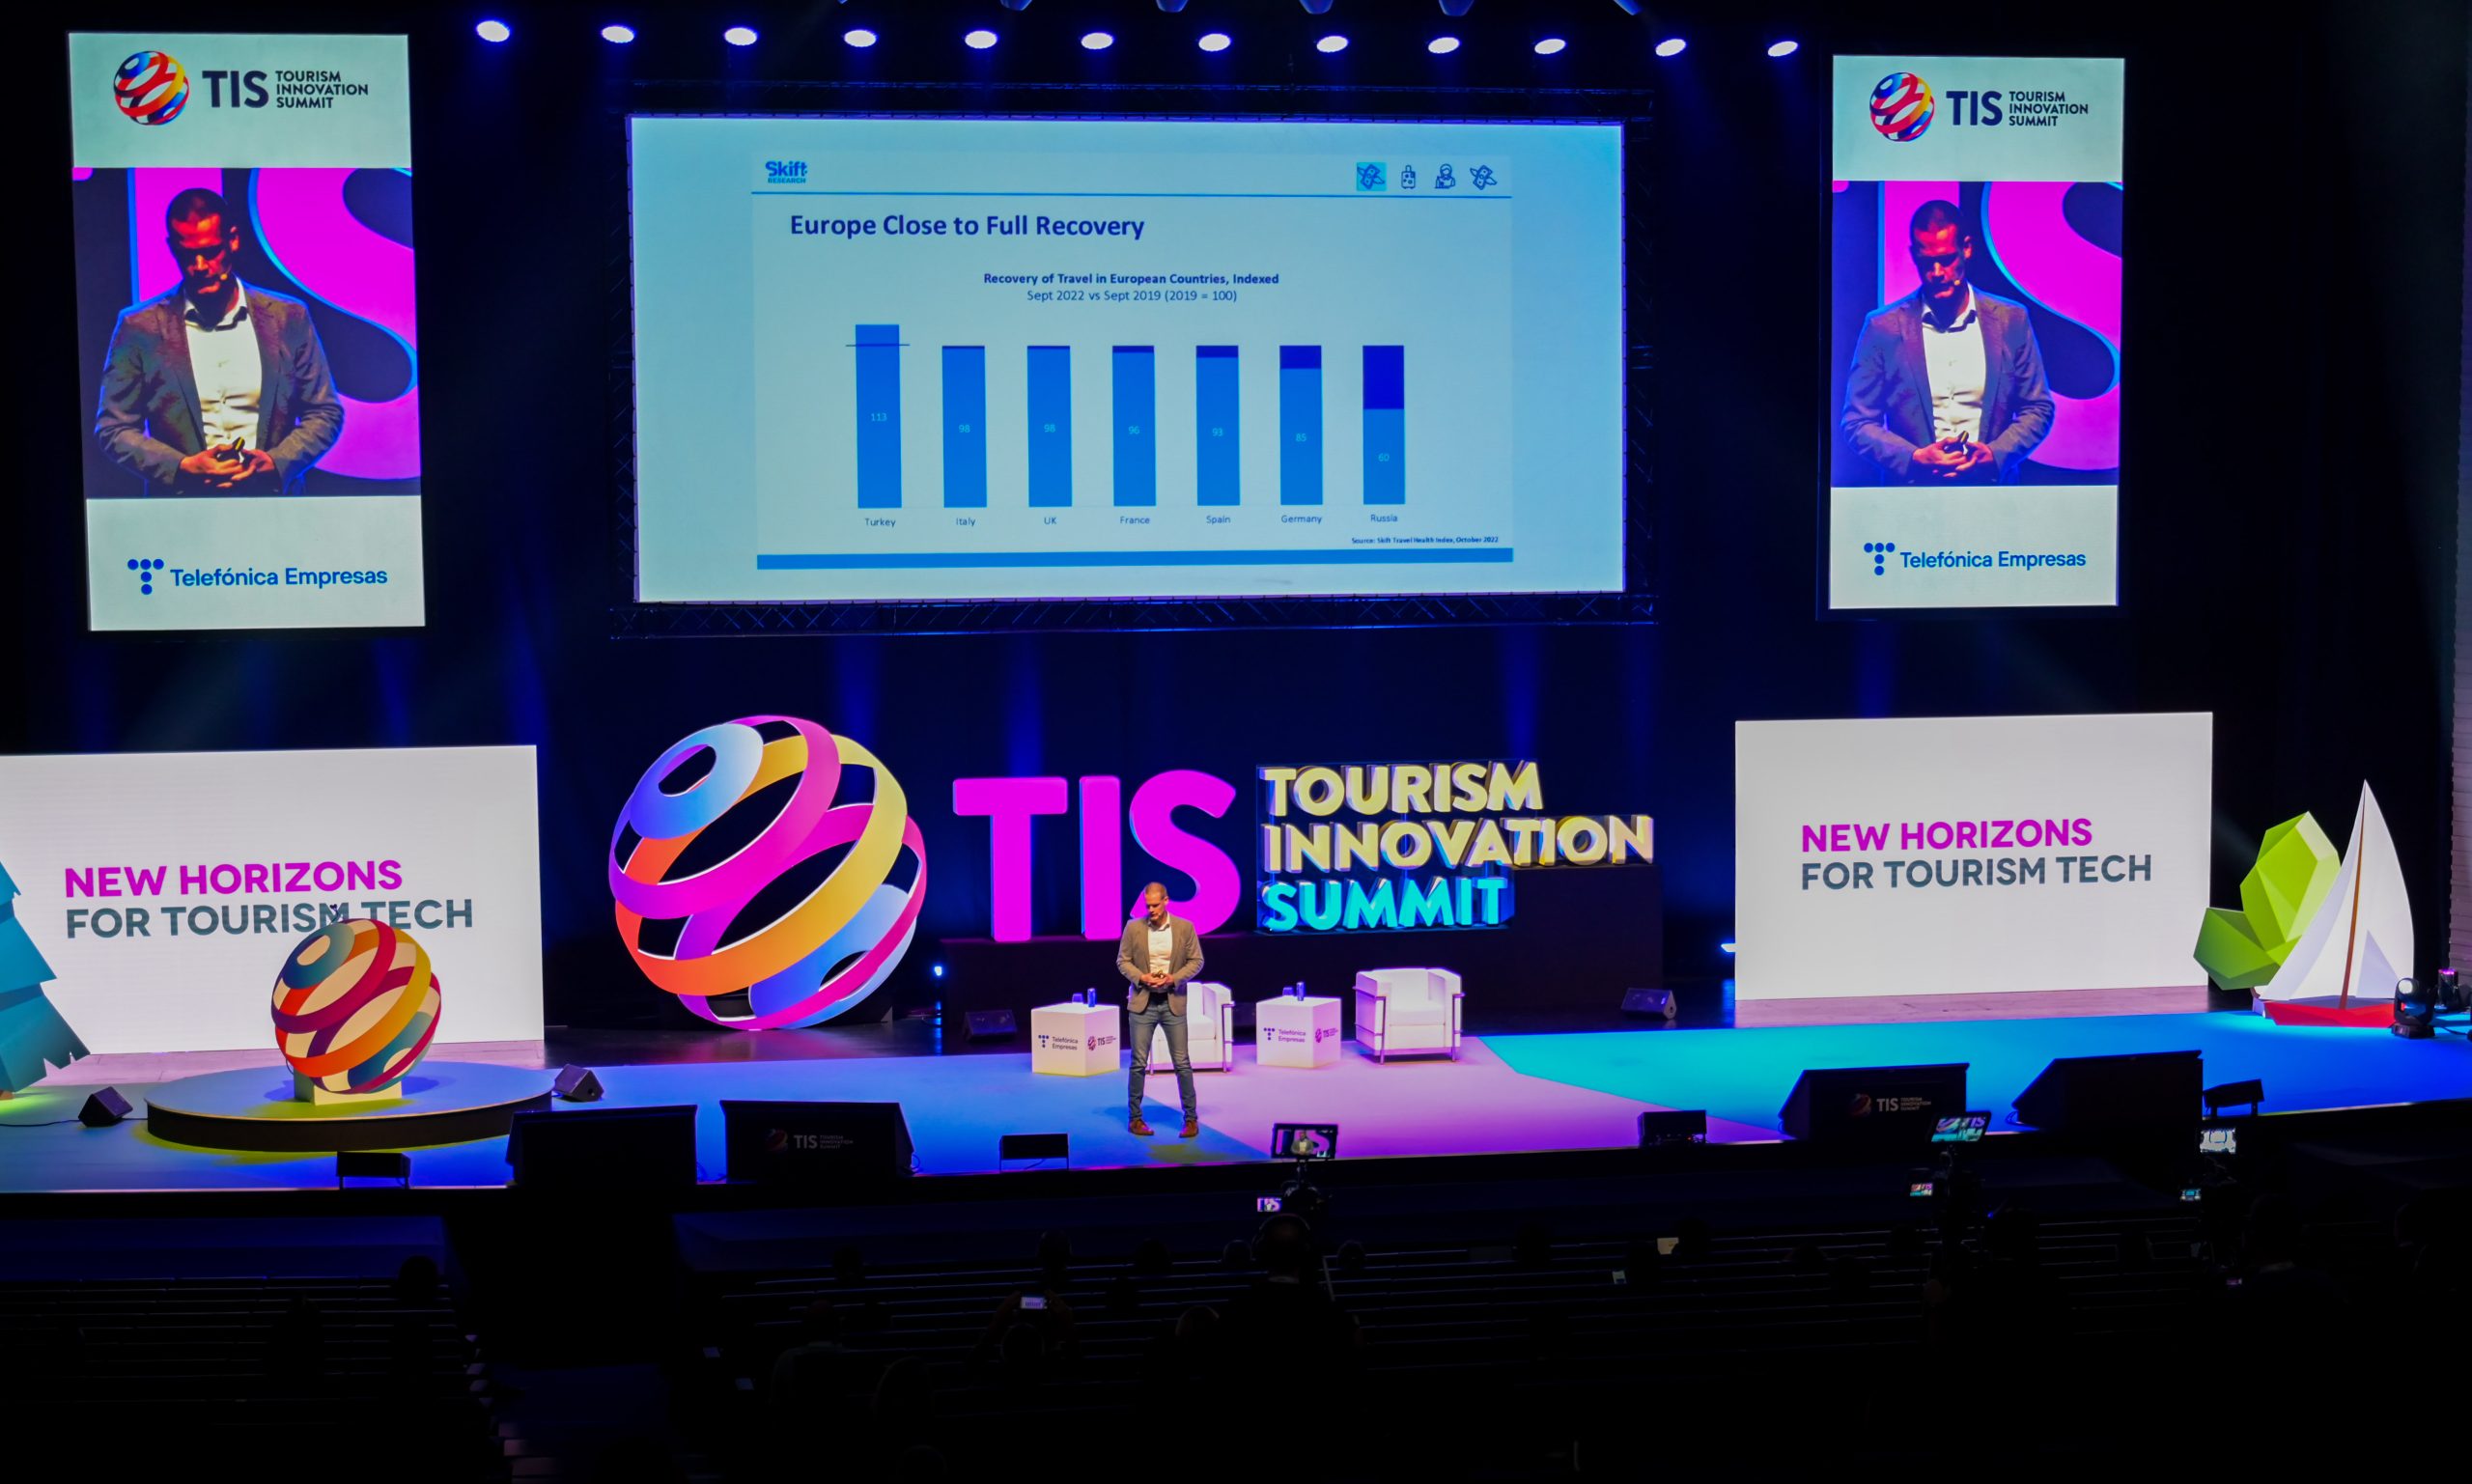 TIS - Tourism Innovation Summit desvela las tendencias turísticas de los próximos años: redes sociales, sostenibilidad y experiencias ‘frictionless’